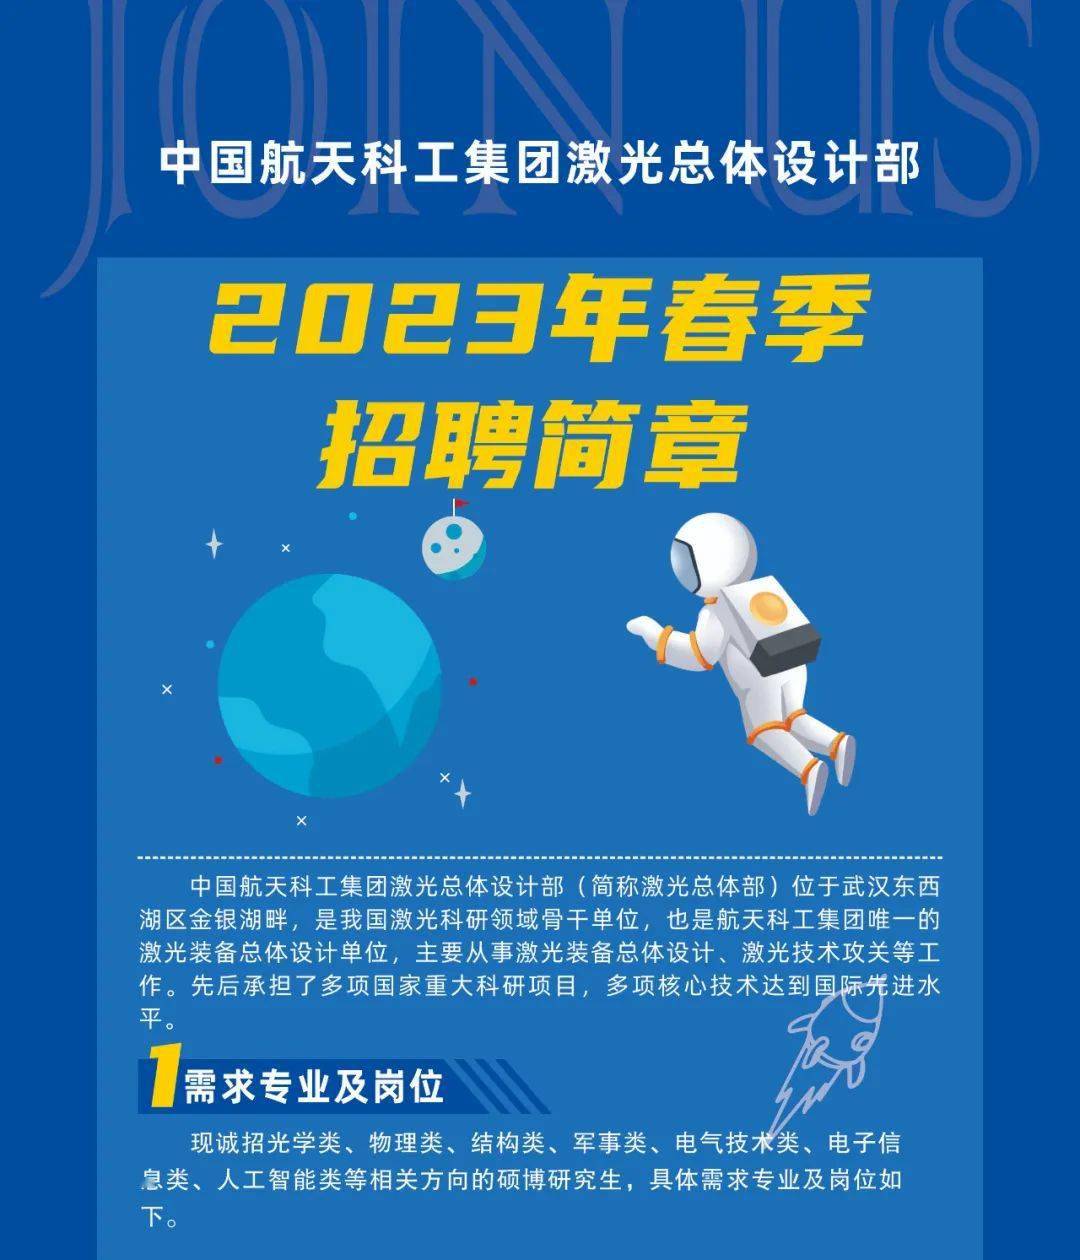 【国防军工】中国航天科工集团激光总体设计部2023年春季招聘正式启动